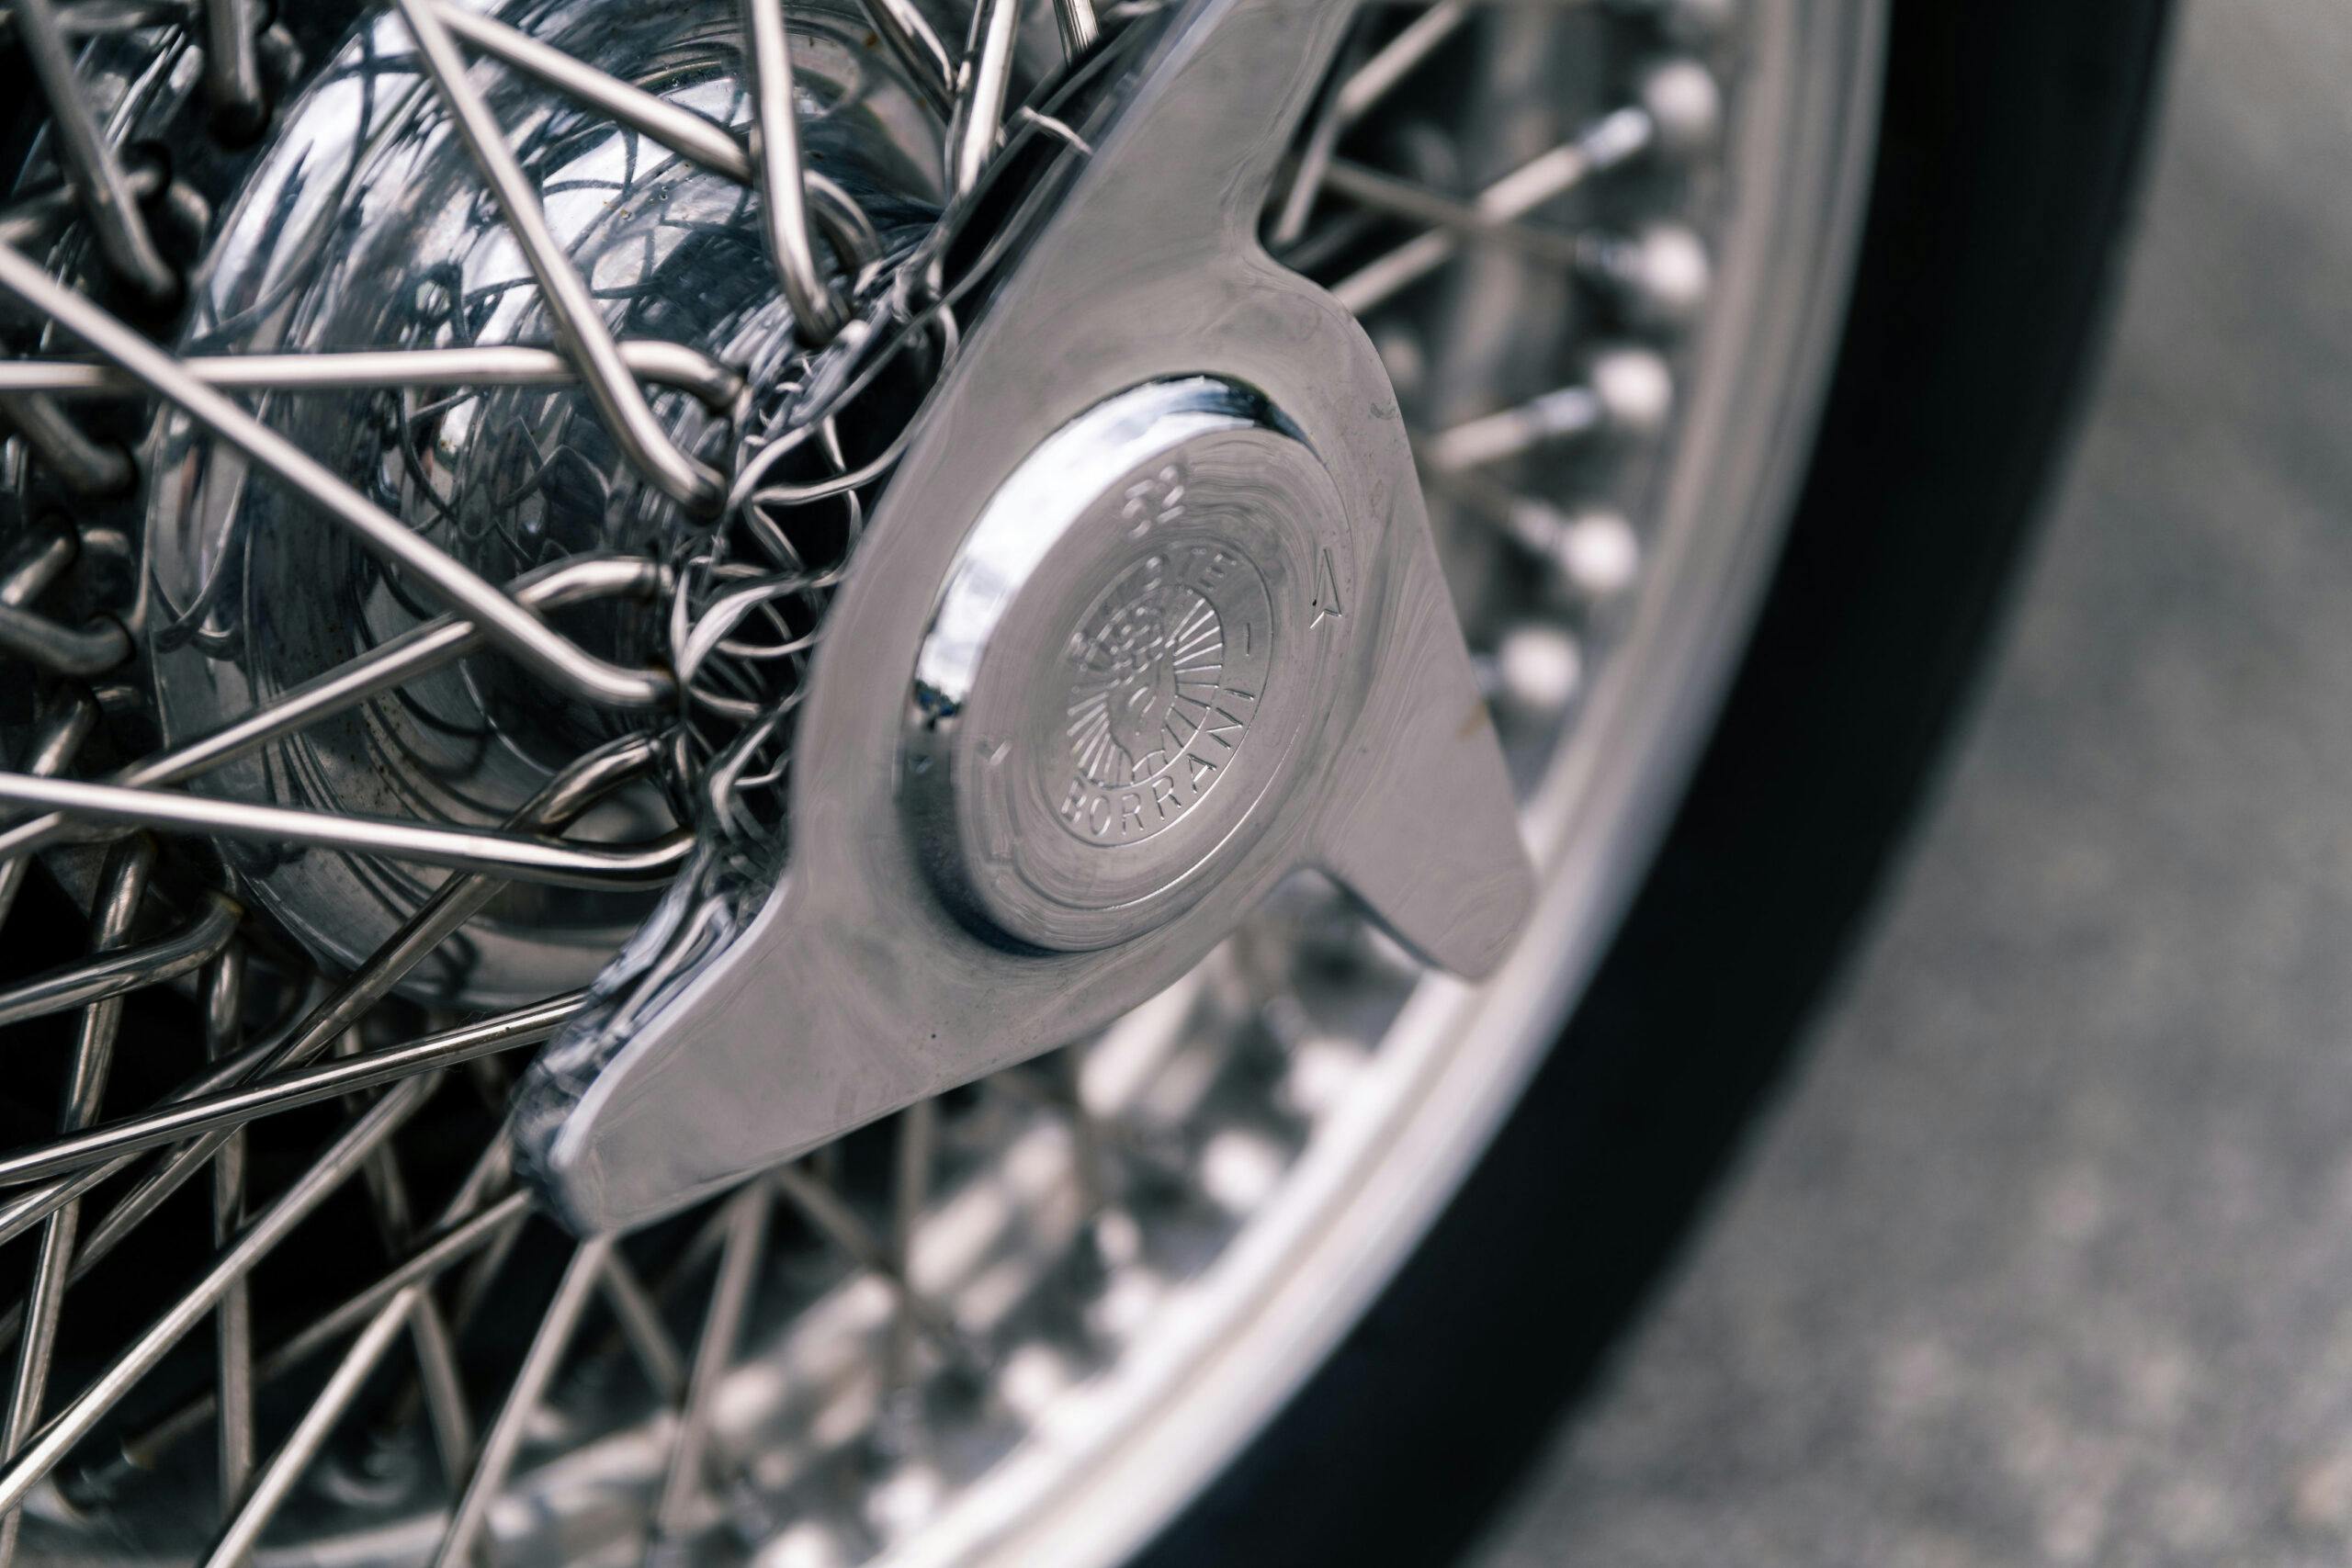 1965 Apollo GT wheel hub detail